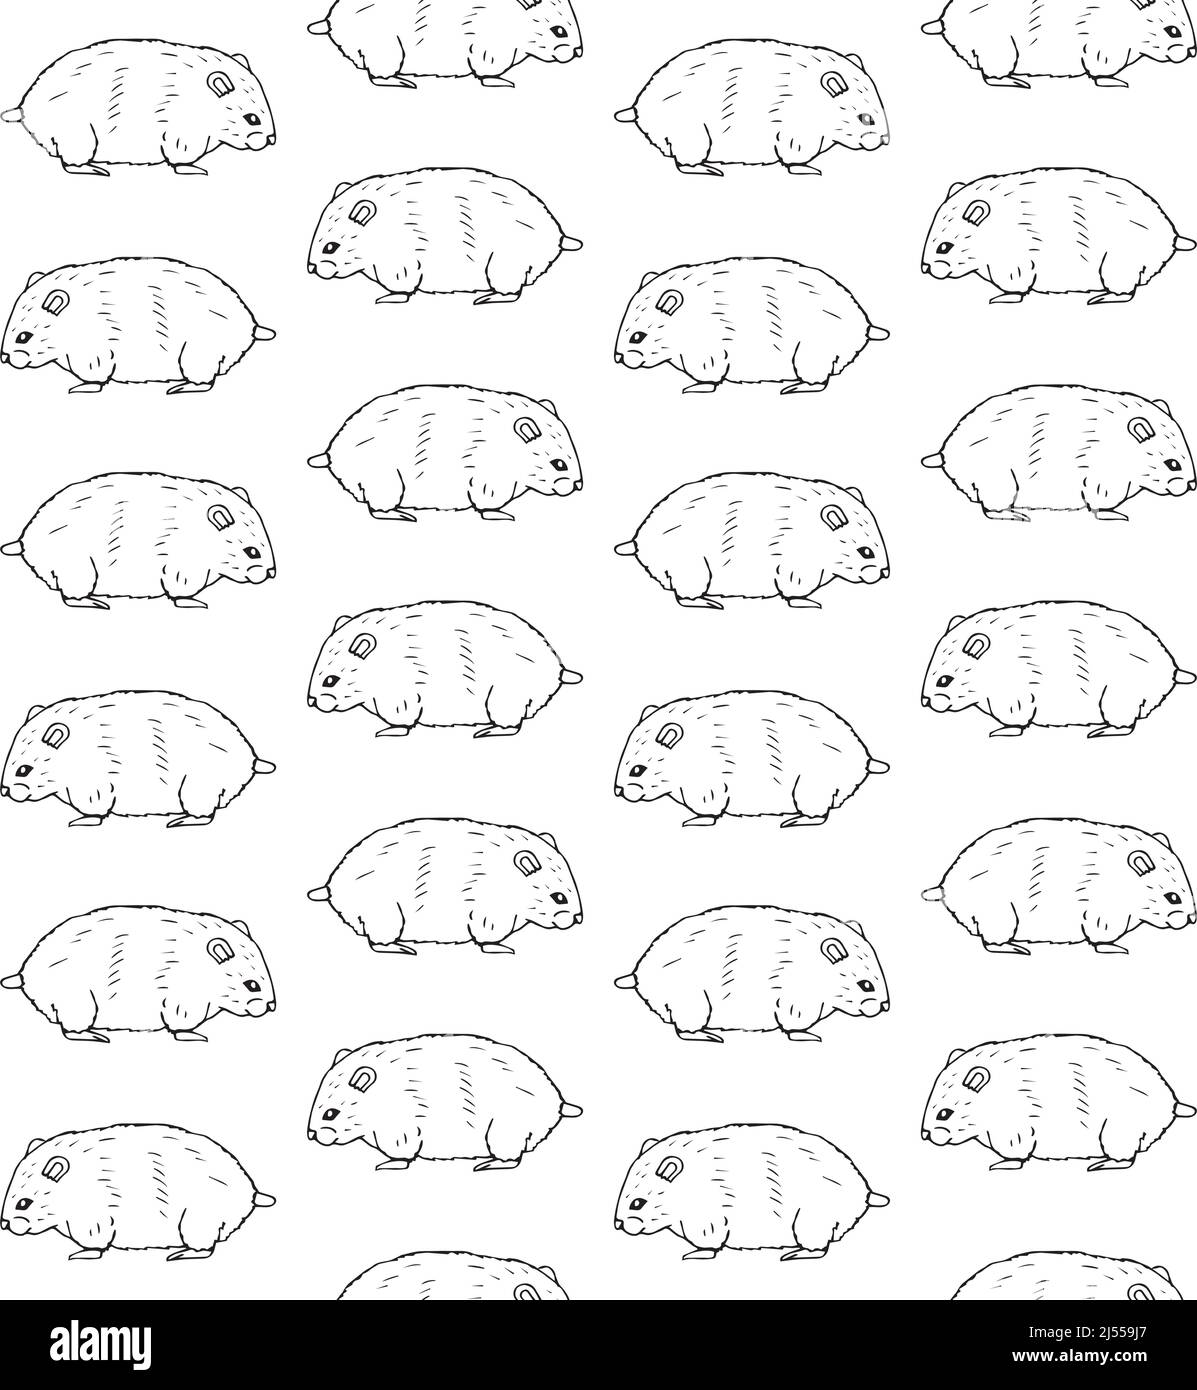 Vektor nahtloses Muster von Hand gezeichneten Hamster Stock Vektor